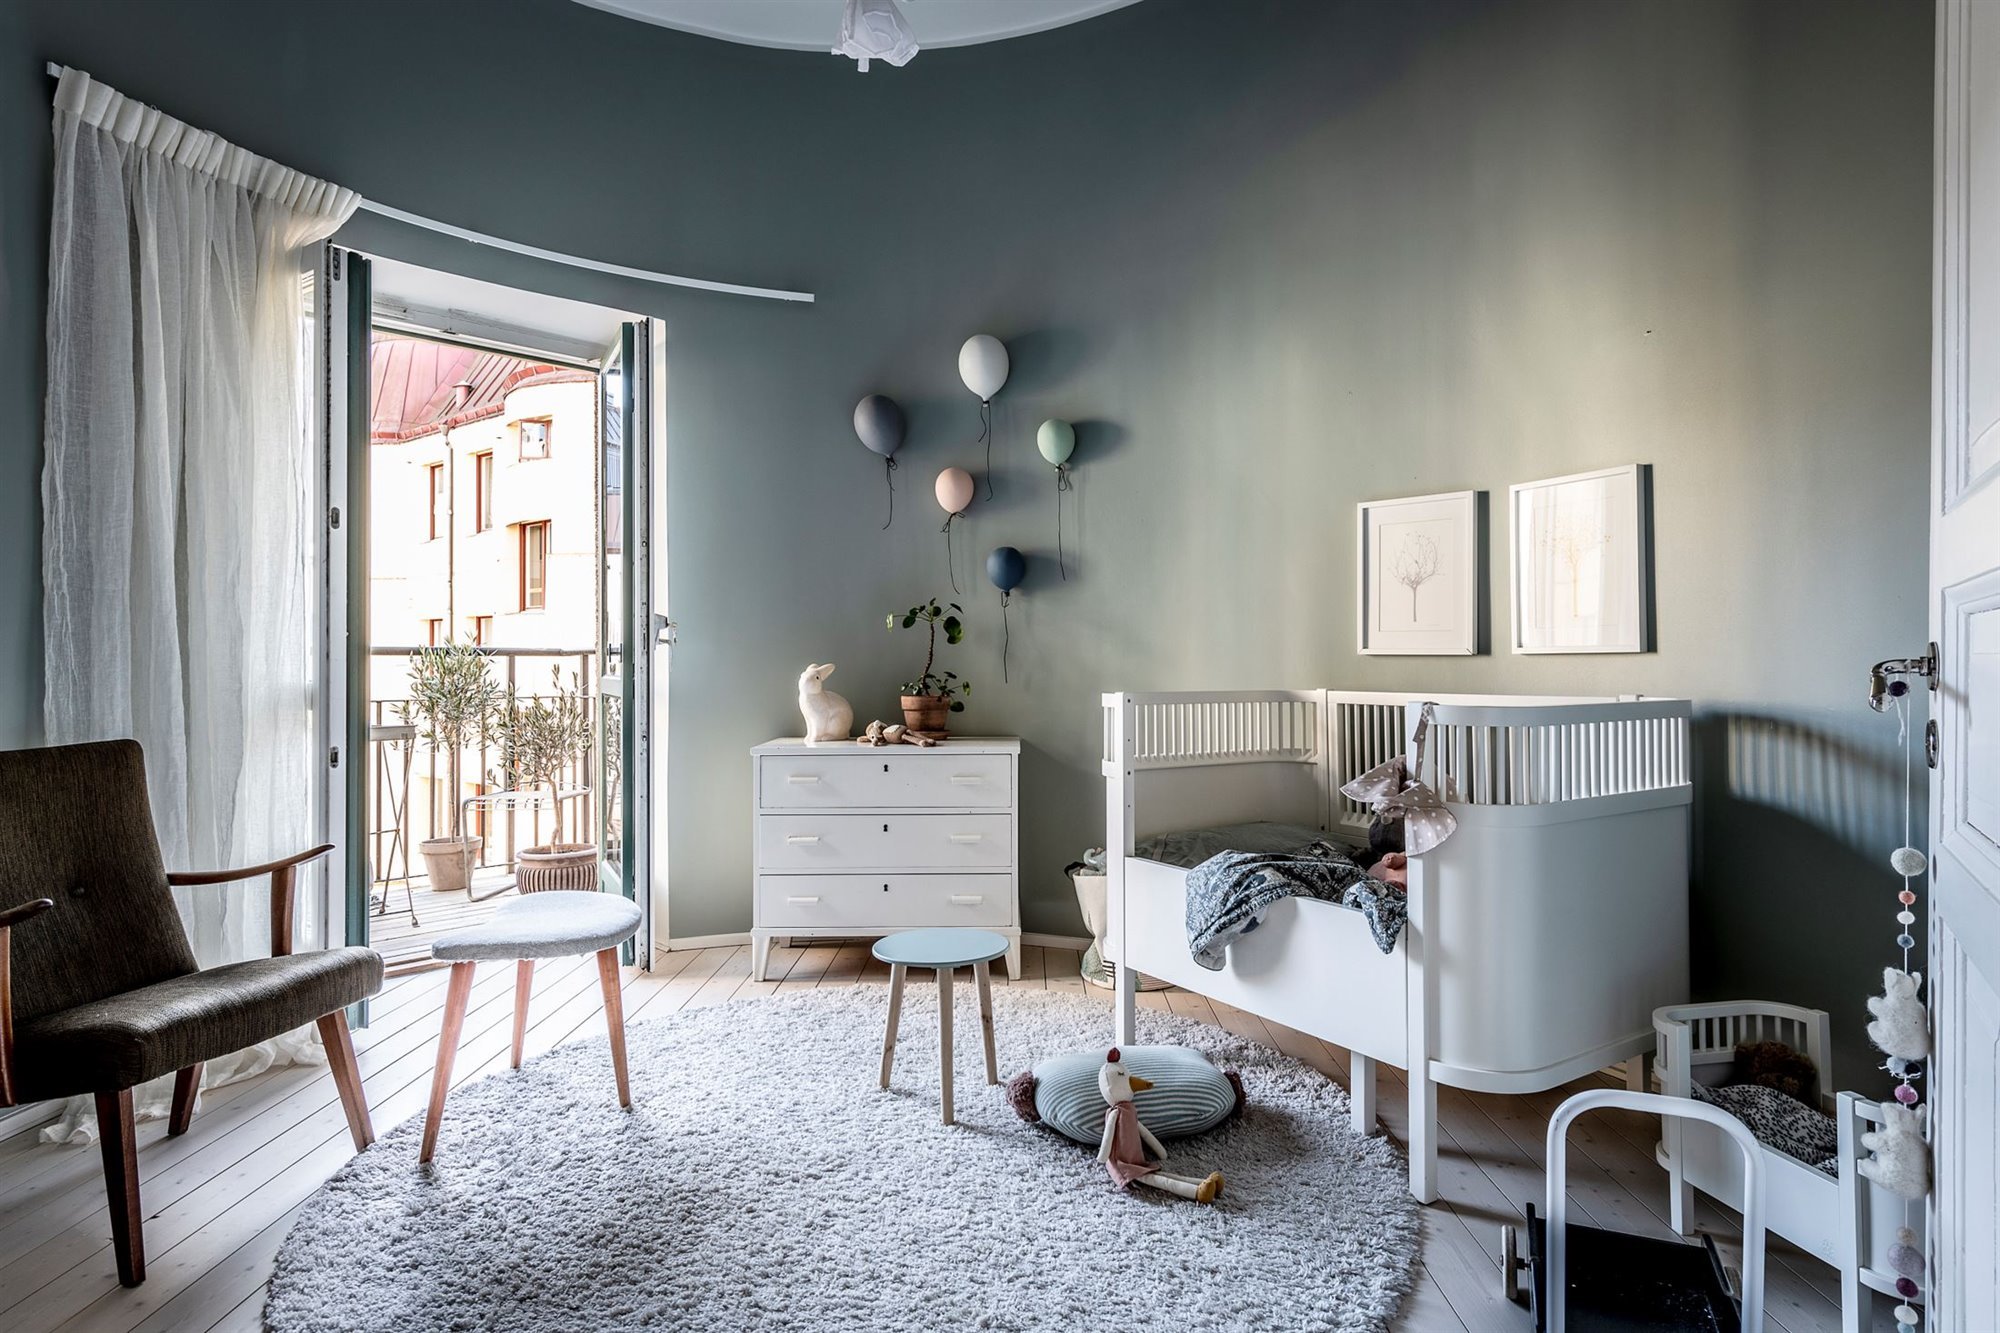 Piso moderno con decoracion nordica y paredes con molduras dormitorio infantil